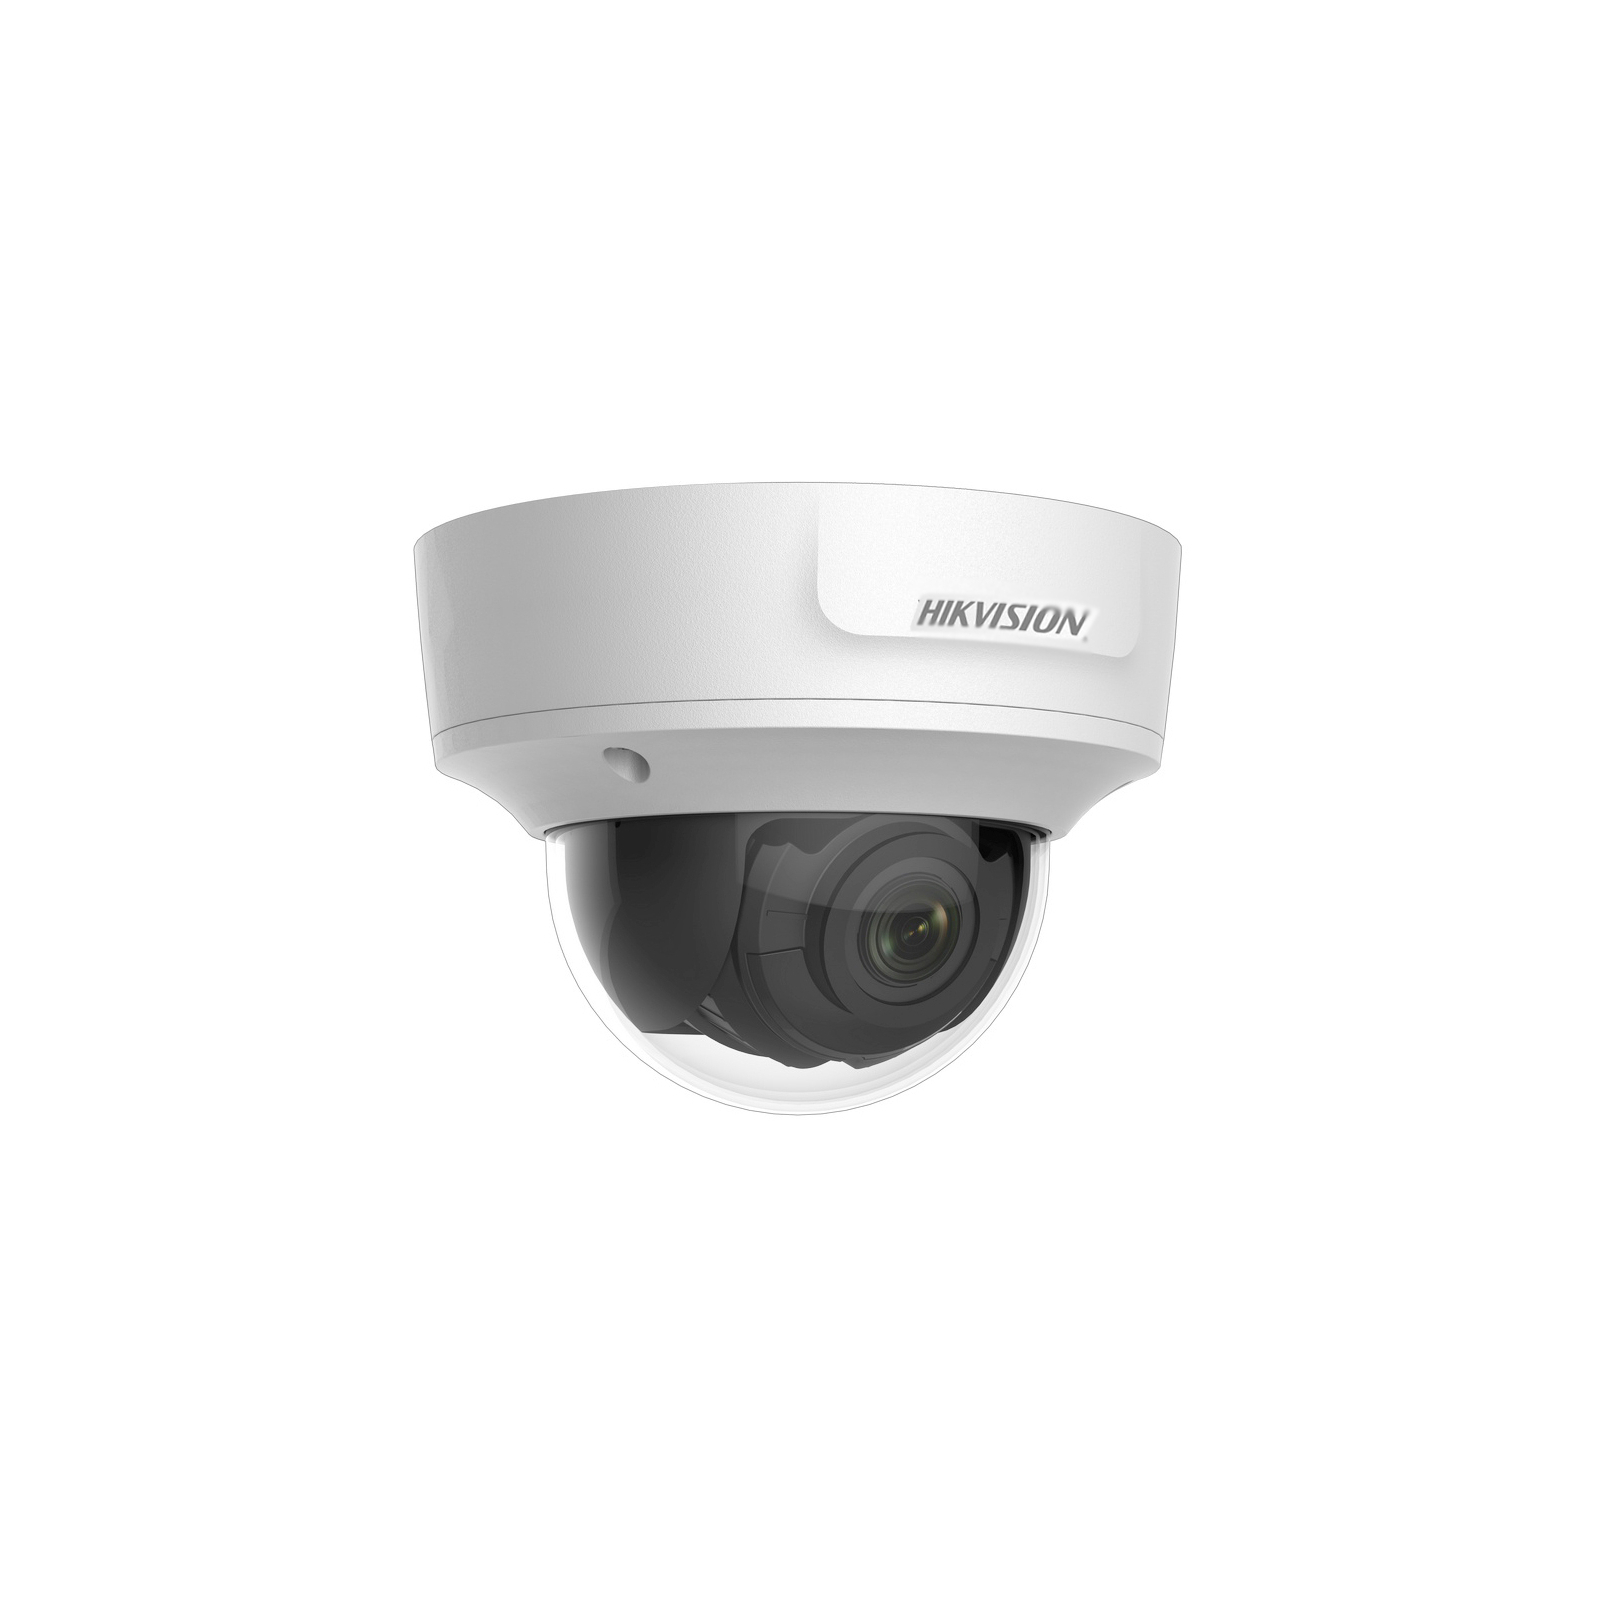 Камера видеонаблюдения Hikvision DS-2CD2721G0-IS (2.8-12) изображение 3